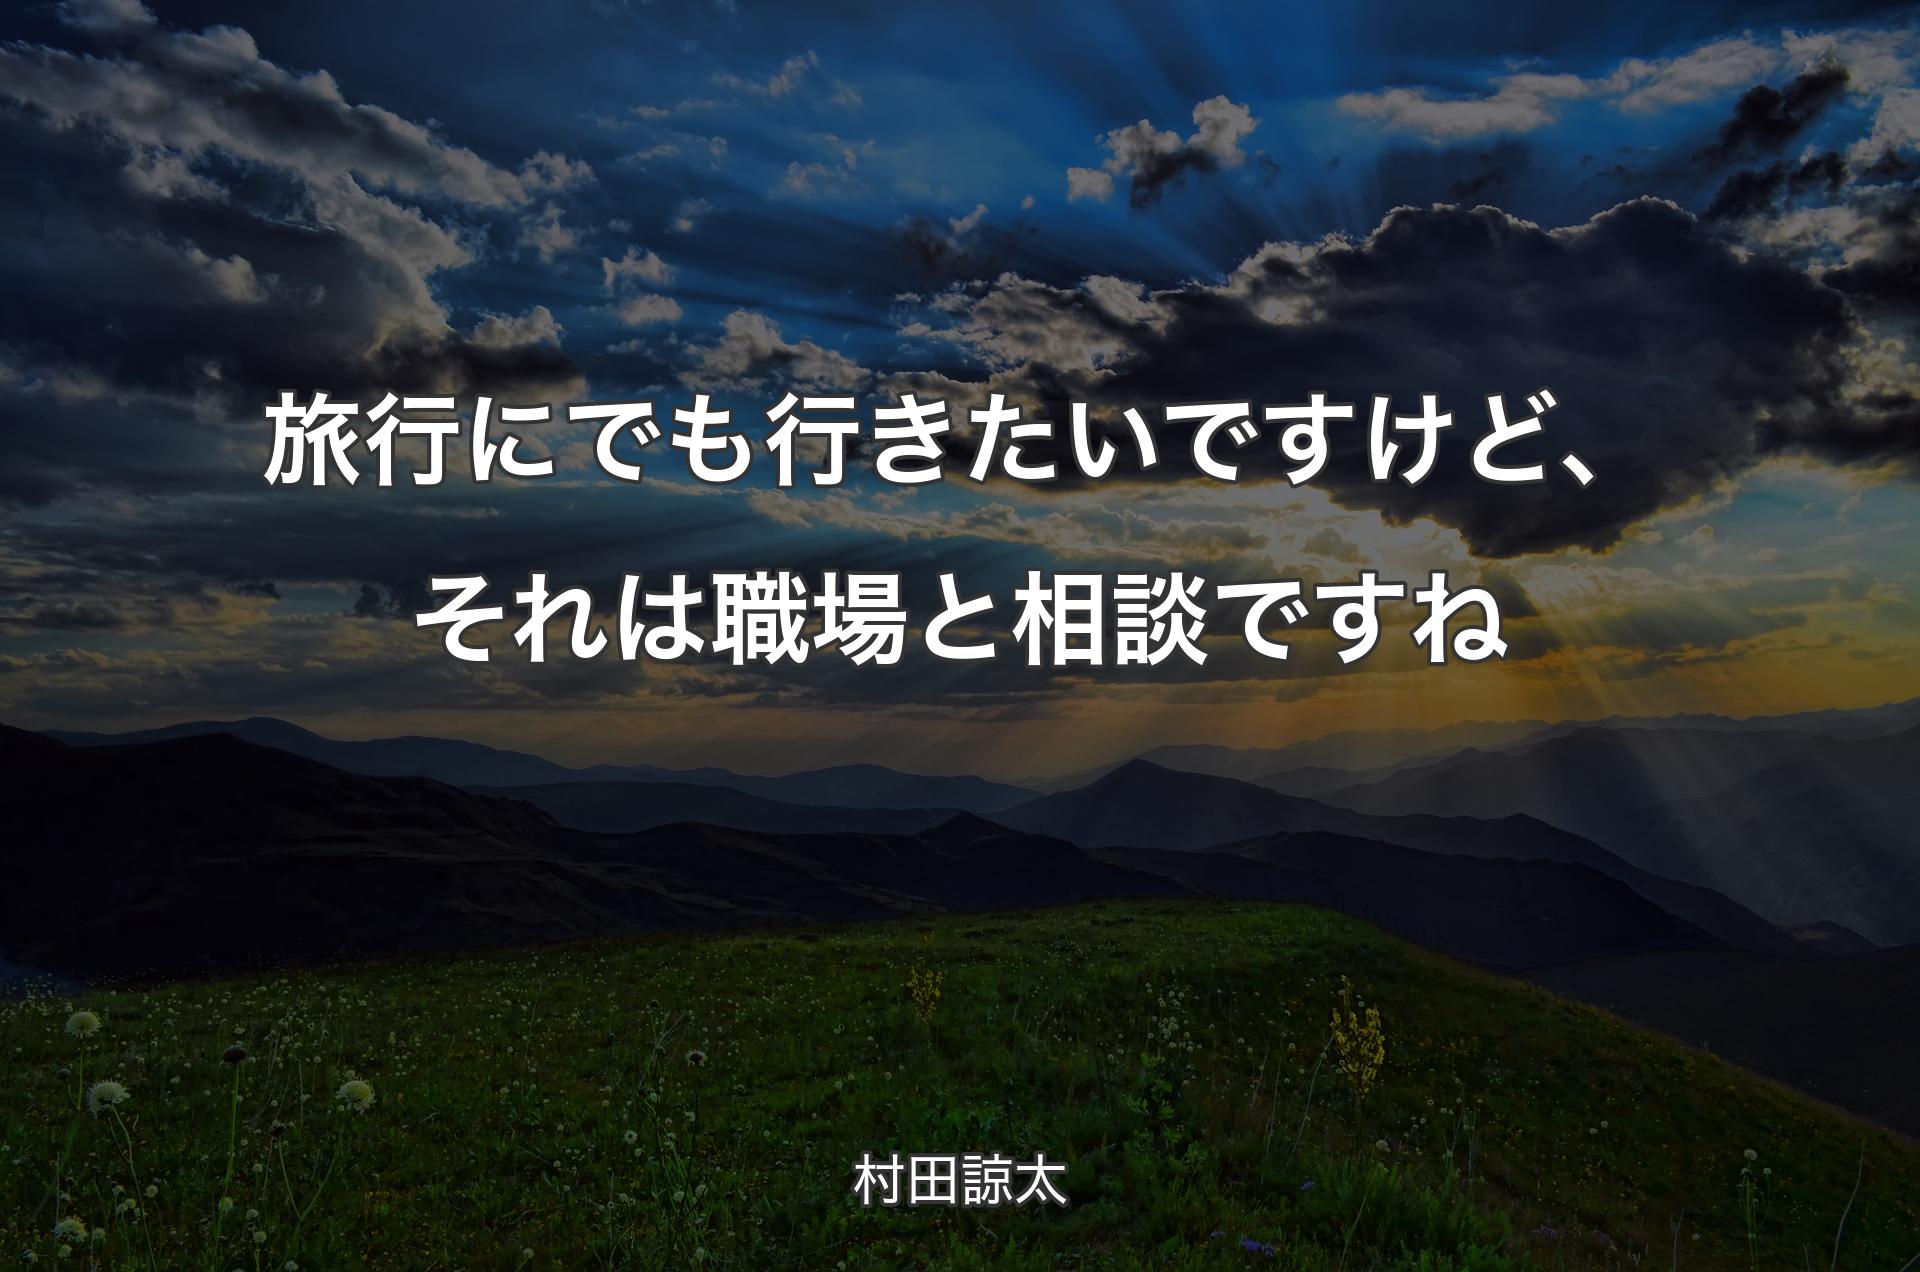 旅行にでも行きたいですけど、それは職場と相談ですね - 村田諒太